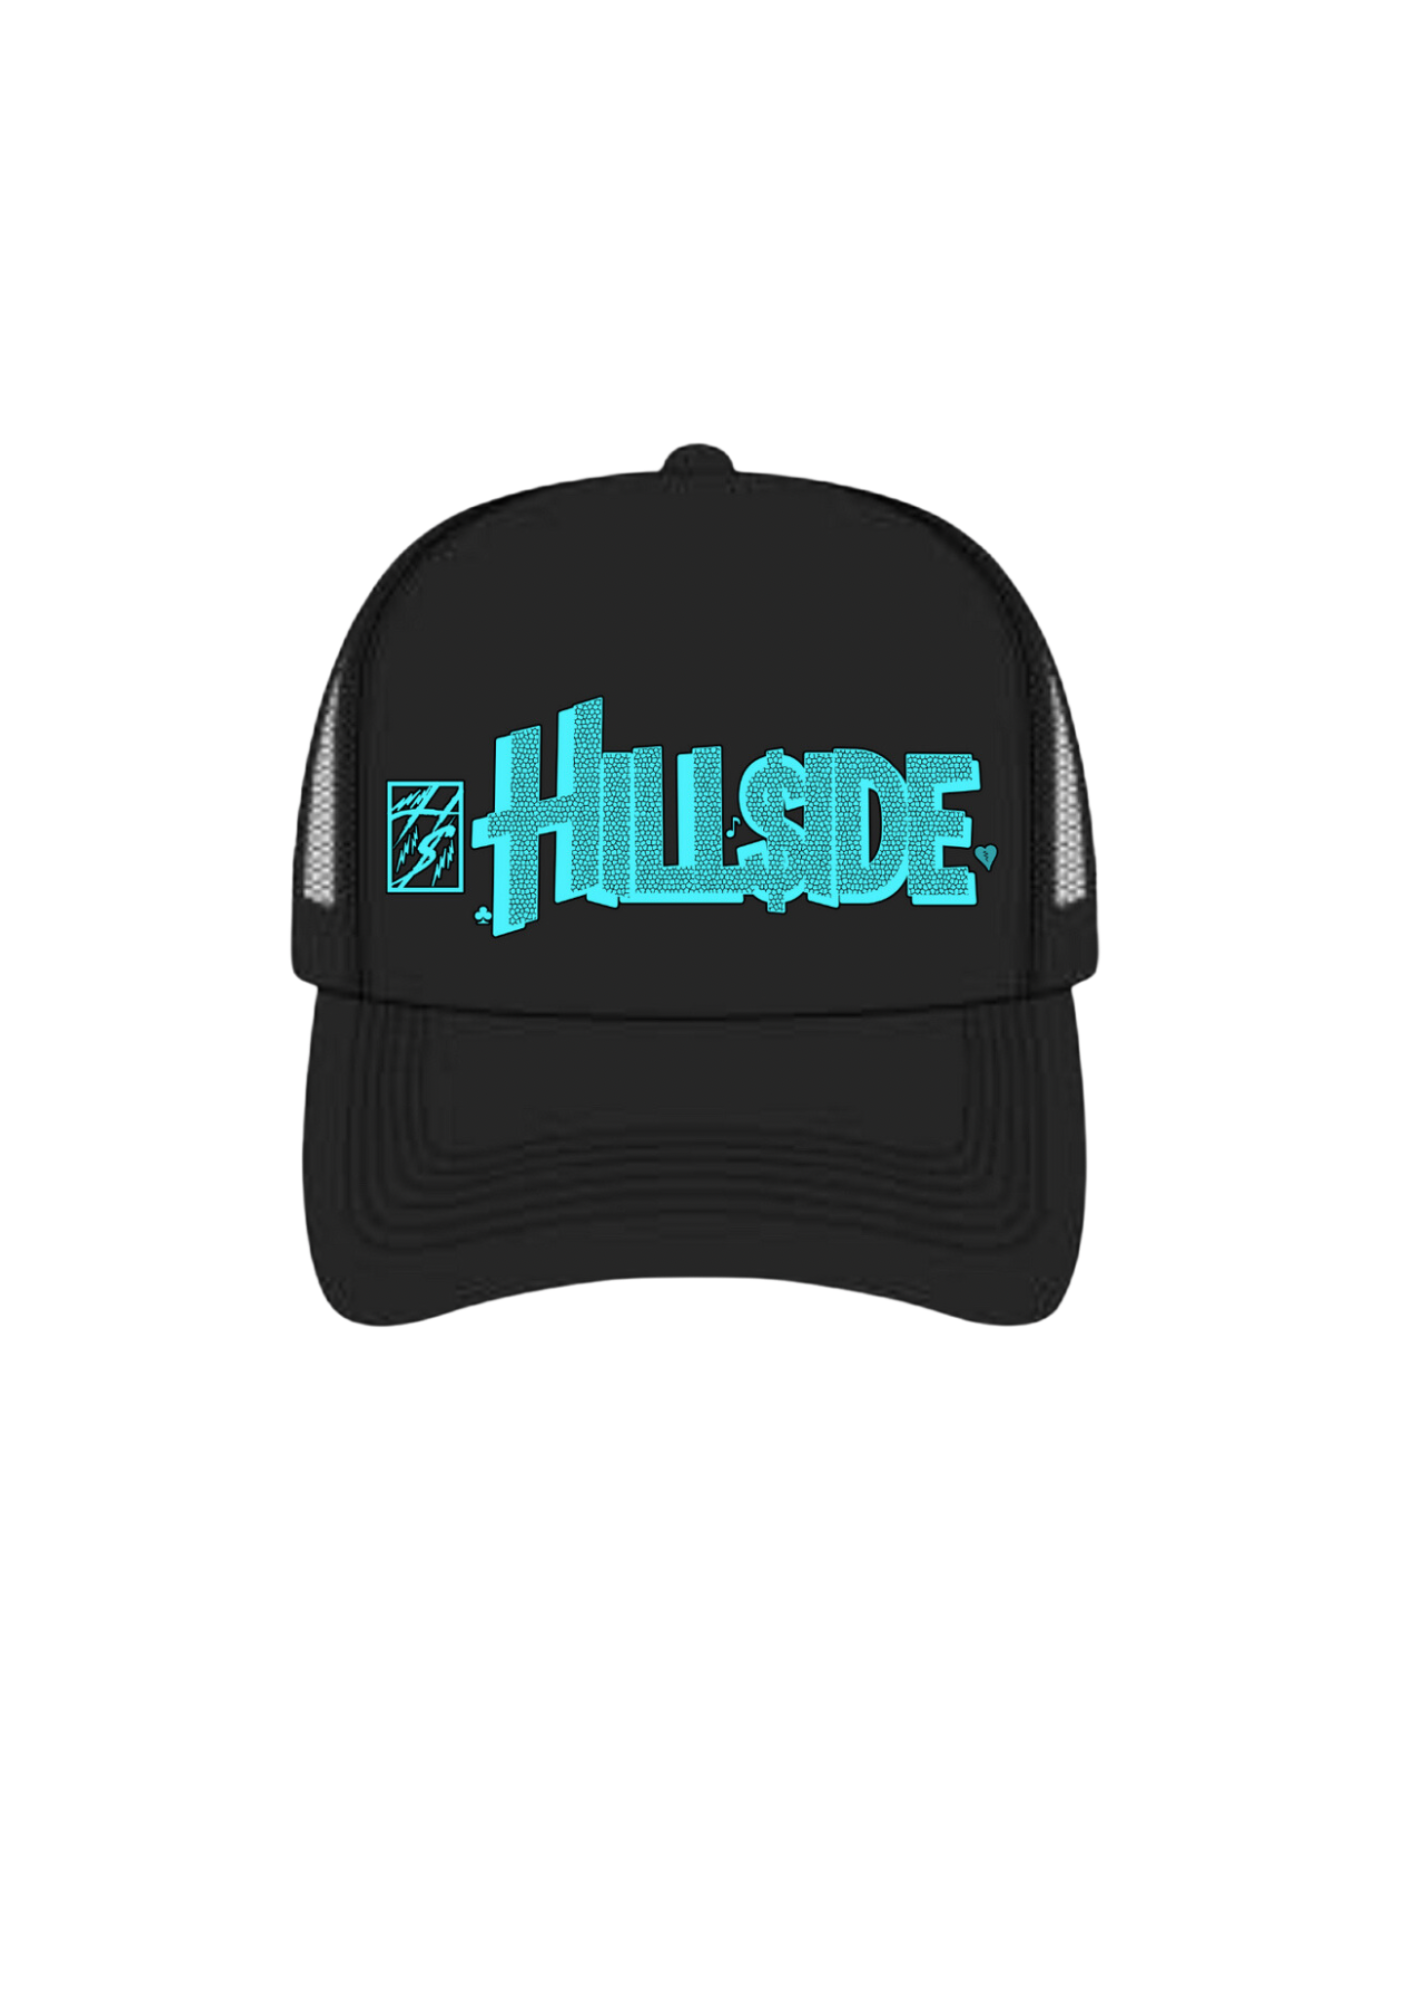 Light Blue “Hillside” Hat